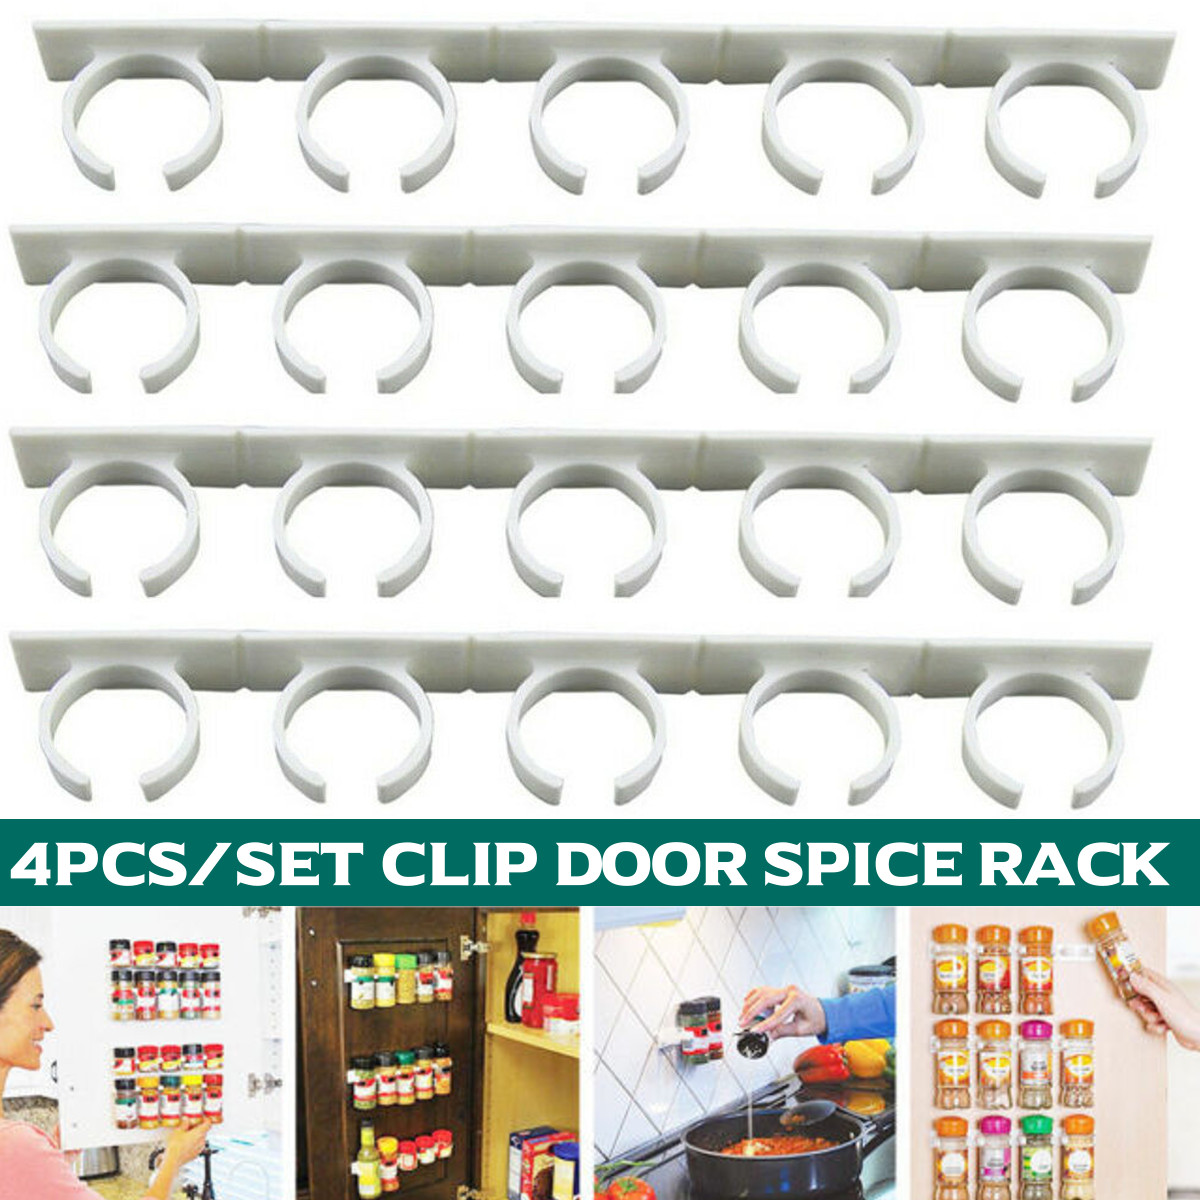 4PCS/SET Kitchen Spice Clips, Spice Gripper Jars Holder Cabinet Storage Strips (4 Strips for Holds 20 Jars） - image 1 of 12